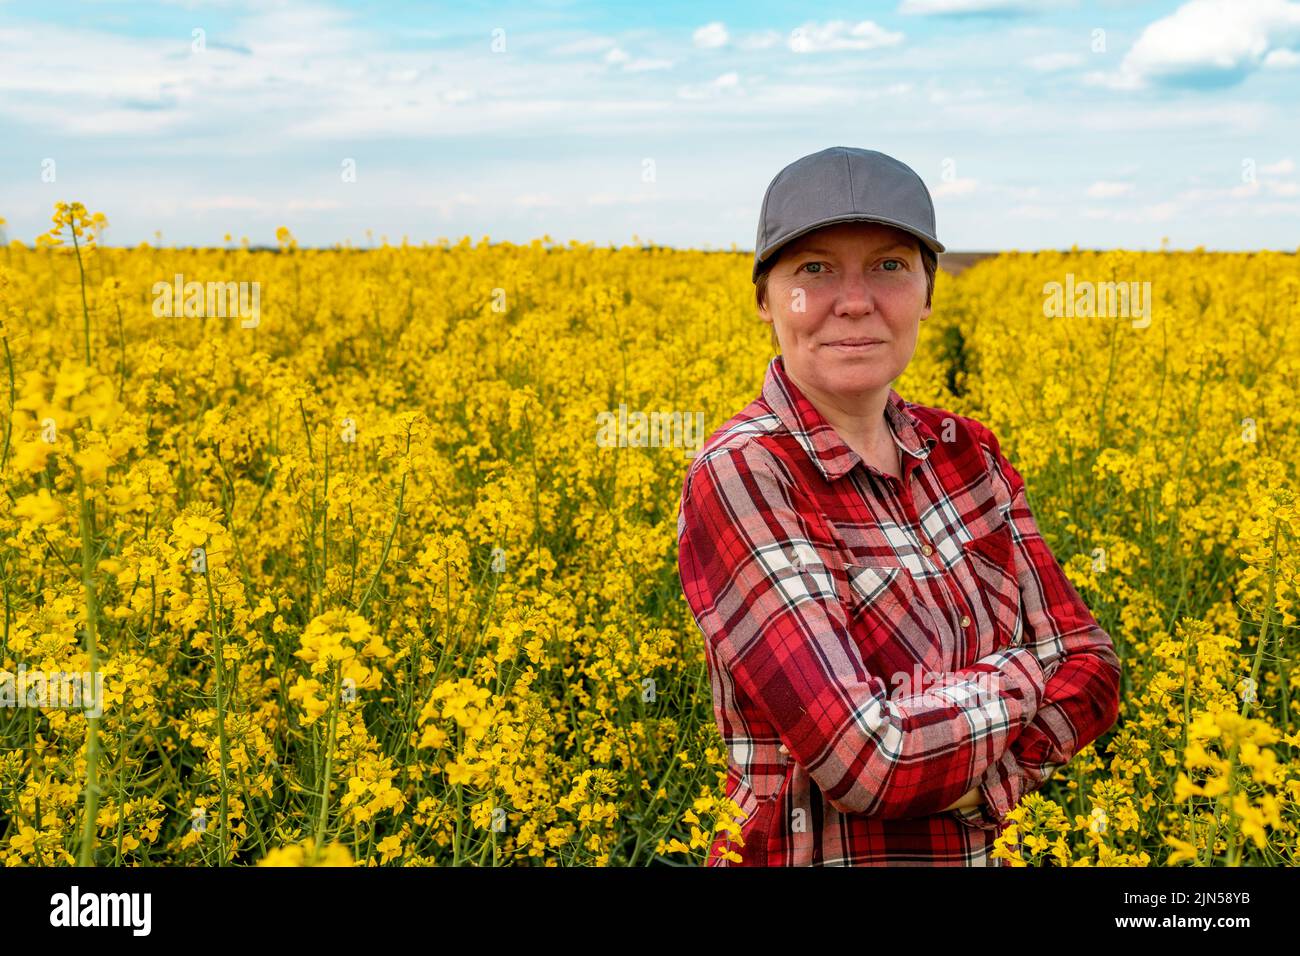 Trabajador agrícola seguro y seguro de sí mismo con camisa de cuadros rojos y sombrero de camionero parado en el campo de colza cultivada en flor y observando los cultivos Foto de stock